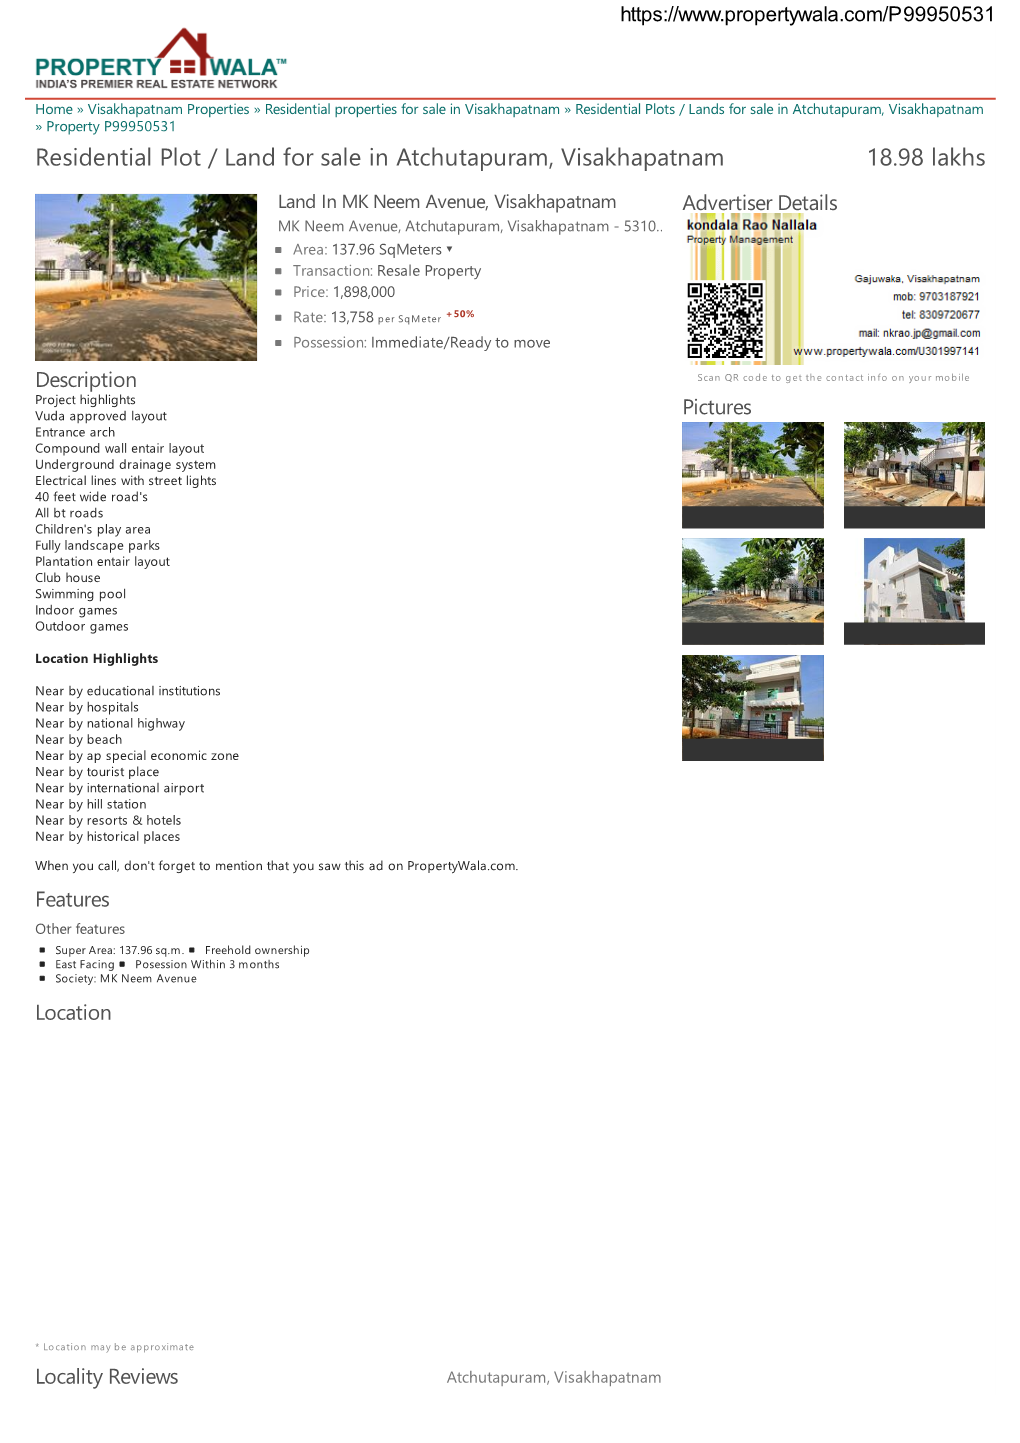 Residential Plot / Land for Sale in Atchutapuram, Visakhapatnam